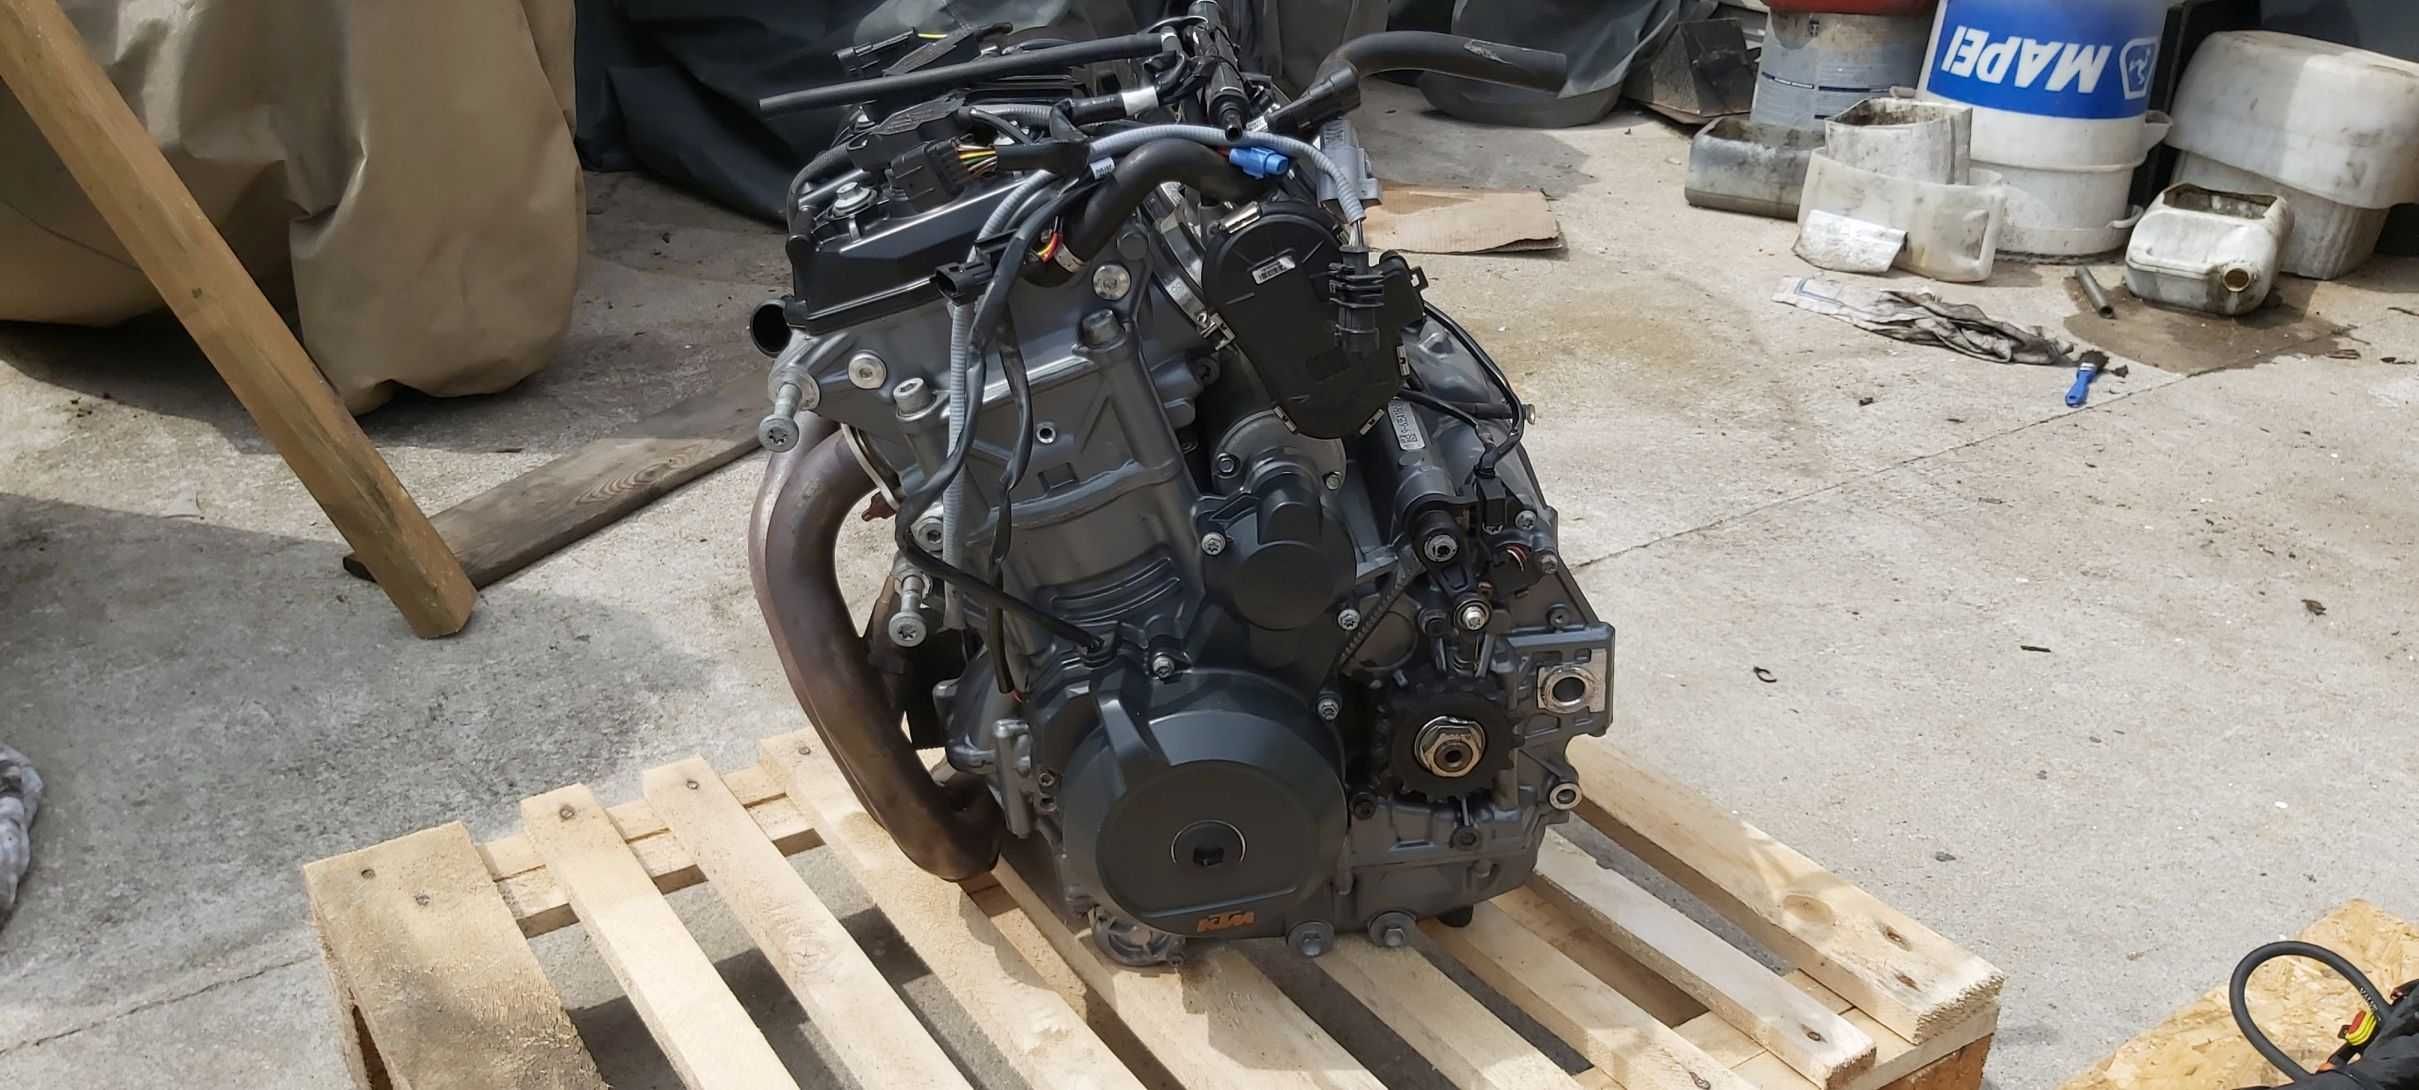 SWAP KTM 790 Quad przekladka przerobka silnik 2020r Buggy